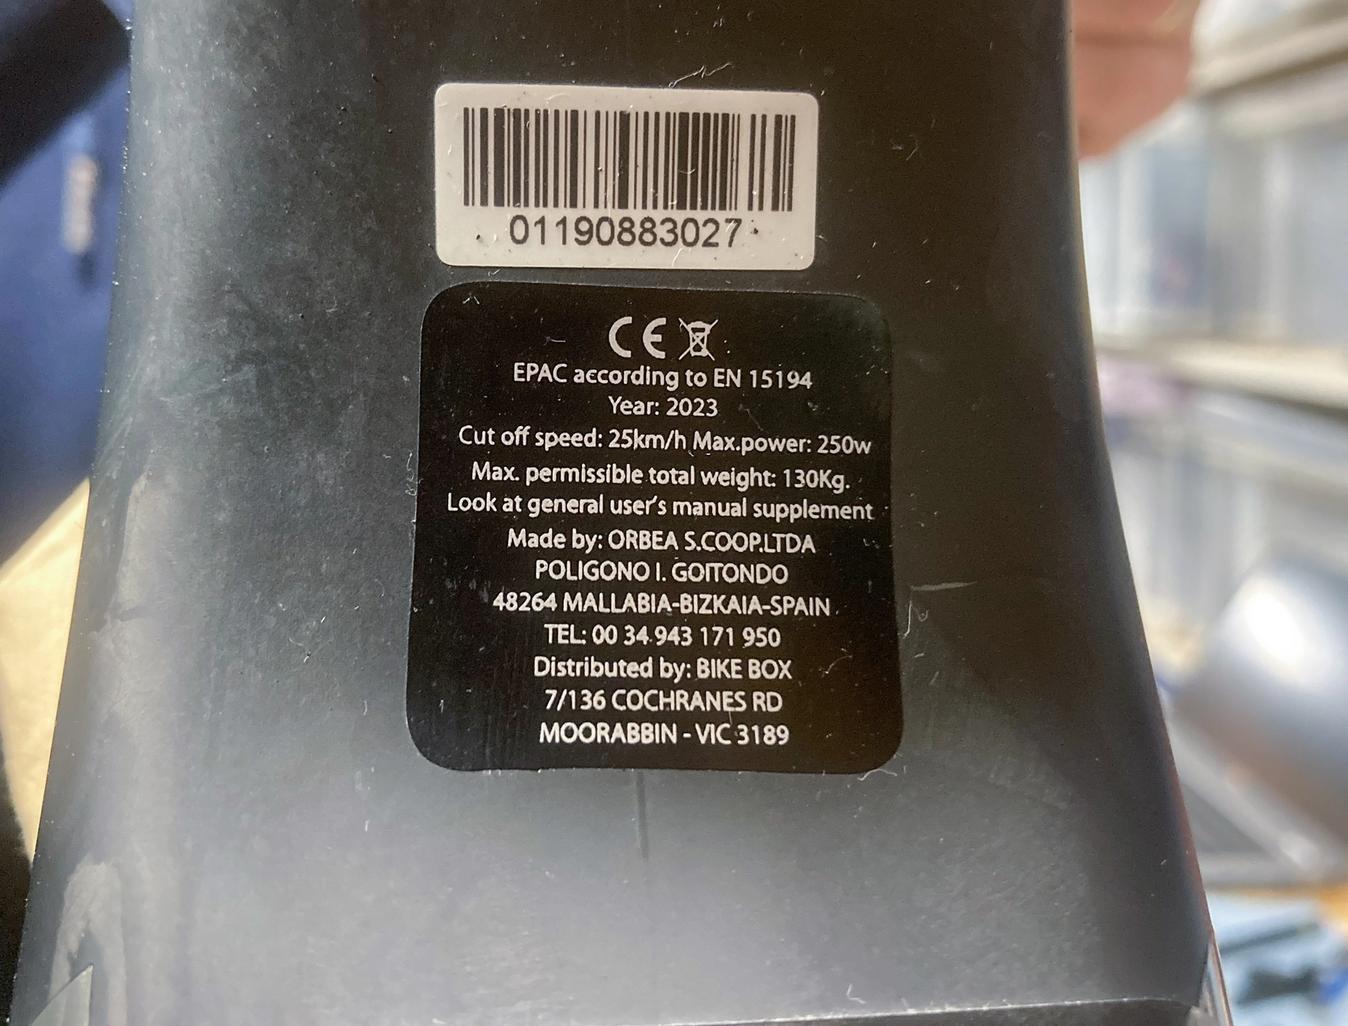 An EC label on an Orbea e-MTB